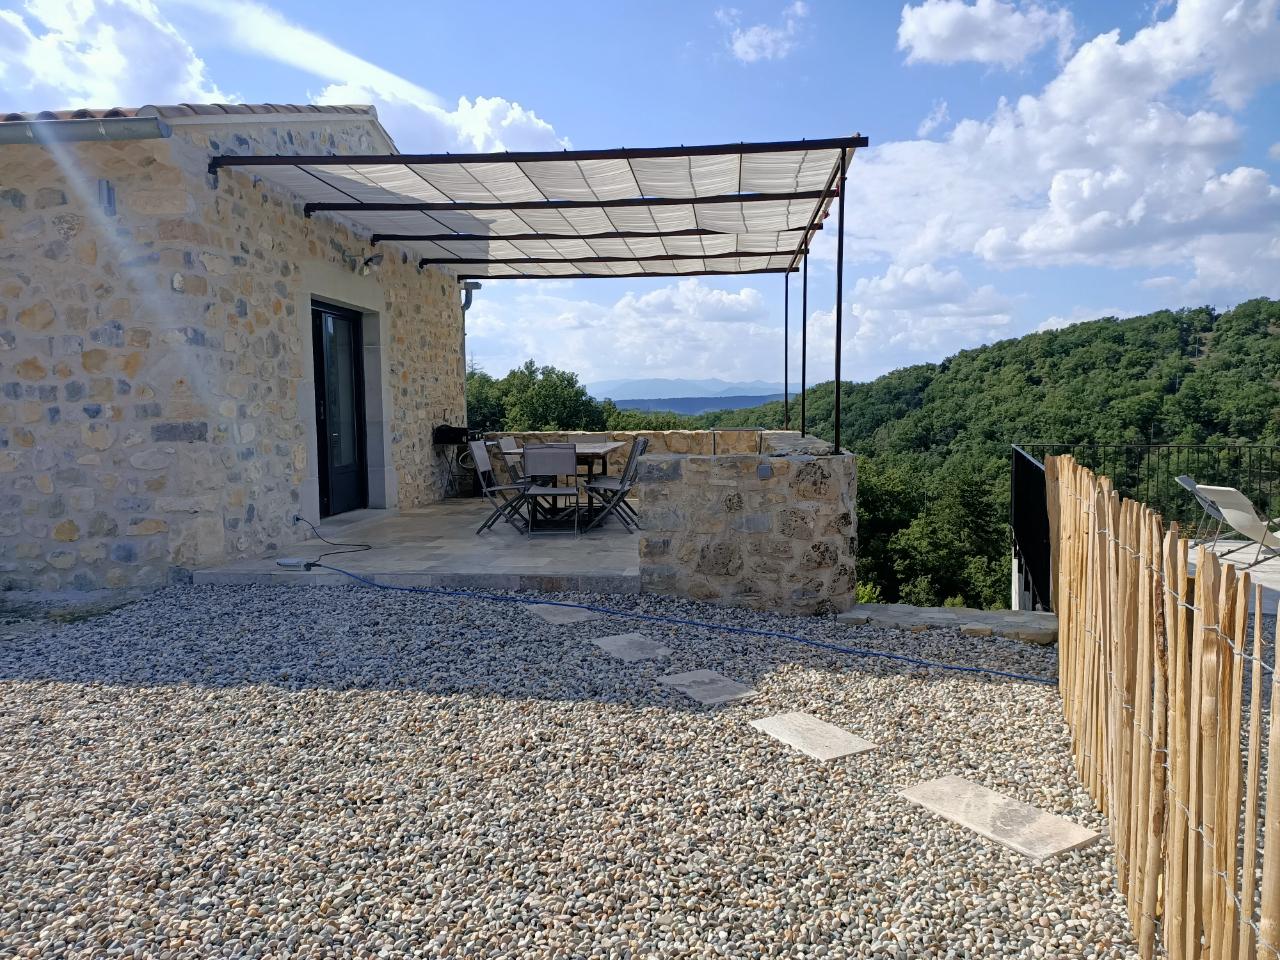 Hôte GreenGo: La maison de Célestin - Mas isolé en pleine vue à 180° sur les Cévennes - Piscine privée - Image 3